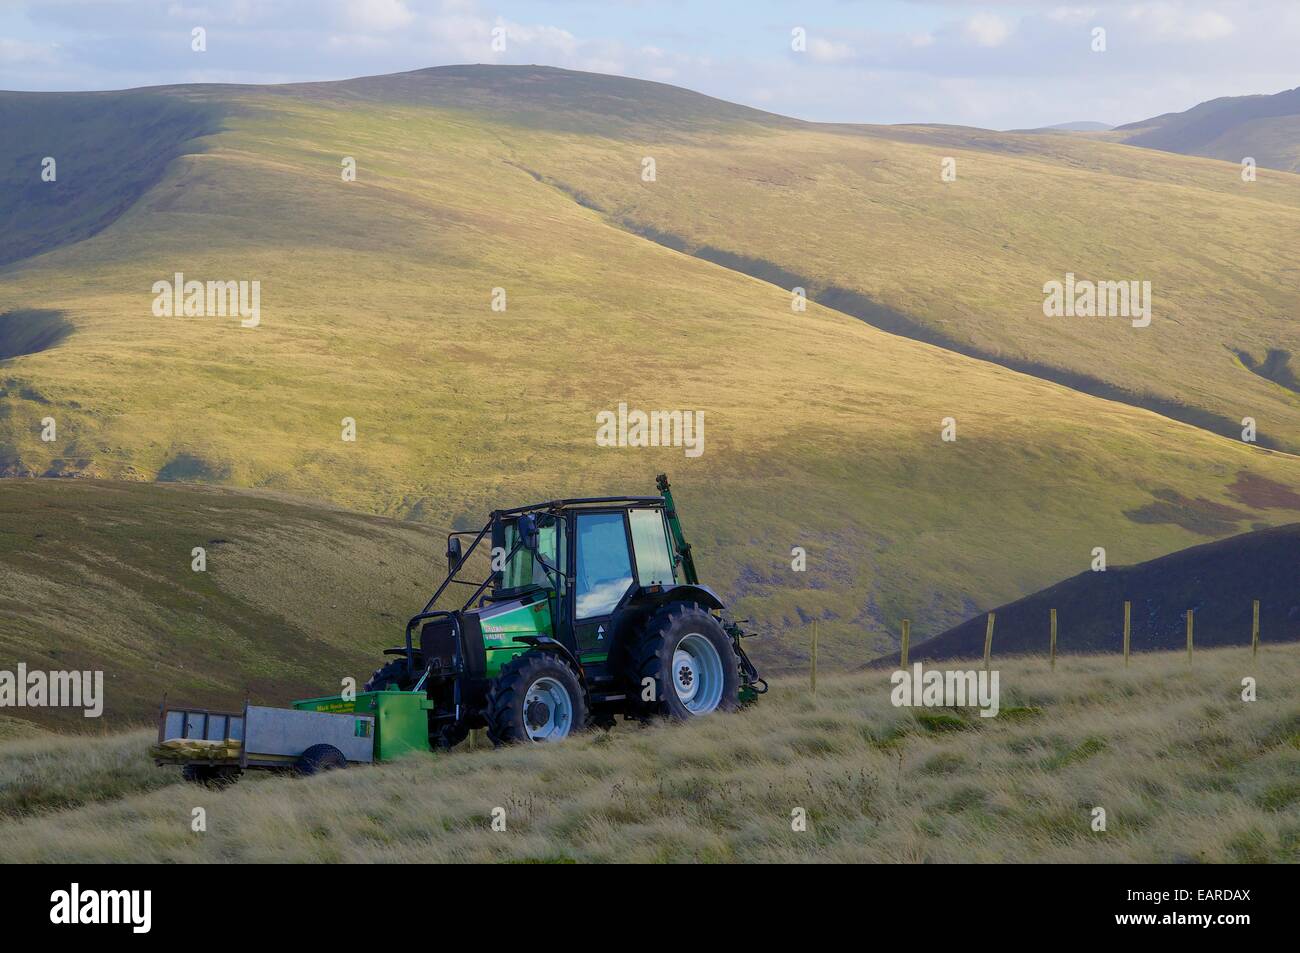 Tracteur transportant des poteaux de clôture impliqués dans les travaux d'escrime. Mitton Hill, a chuté, Carrock Cumbria, Angleterre, Royaume-Uni. Banque D'Images